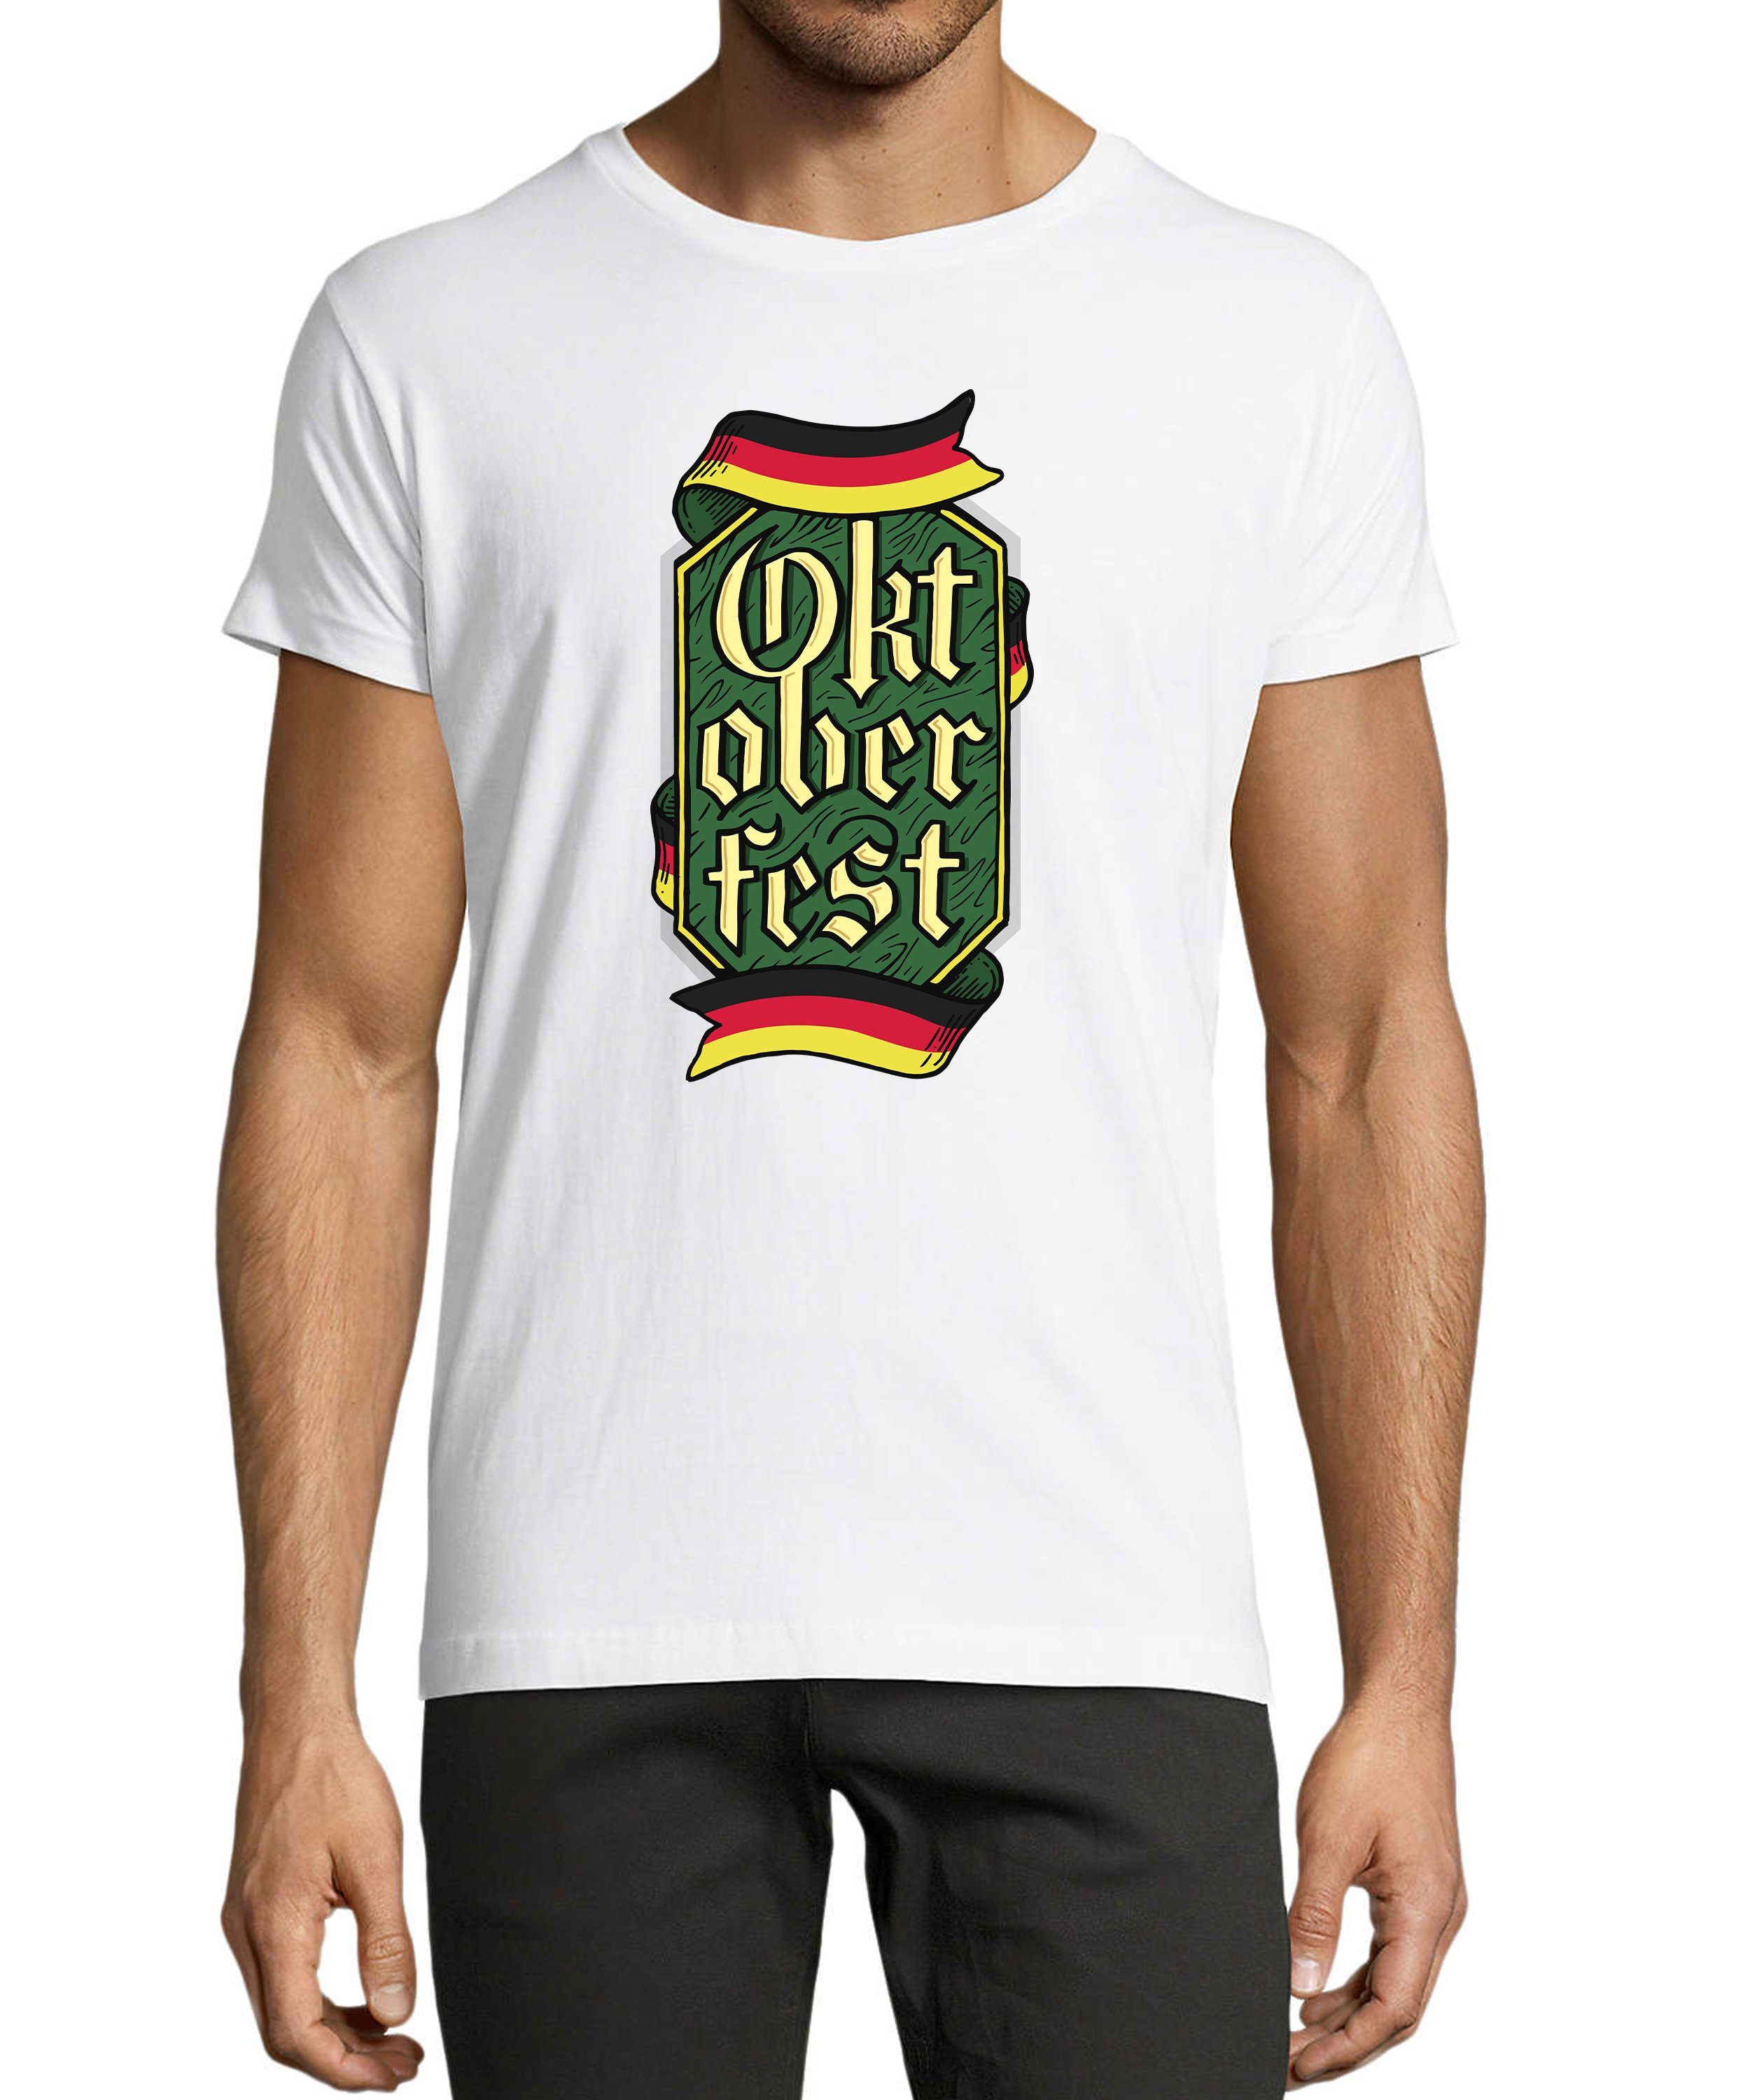 MyDesign24 T-Shirt Herren Party Shirt - Trinkshirt Oktoberfest T-Shirt Baumwollshirt mit Aufdruck Regular Fit, i323 weiss